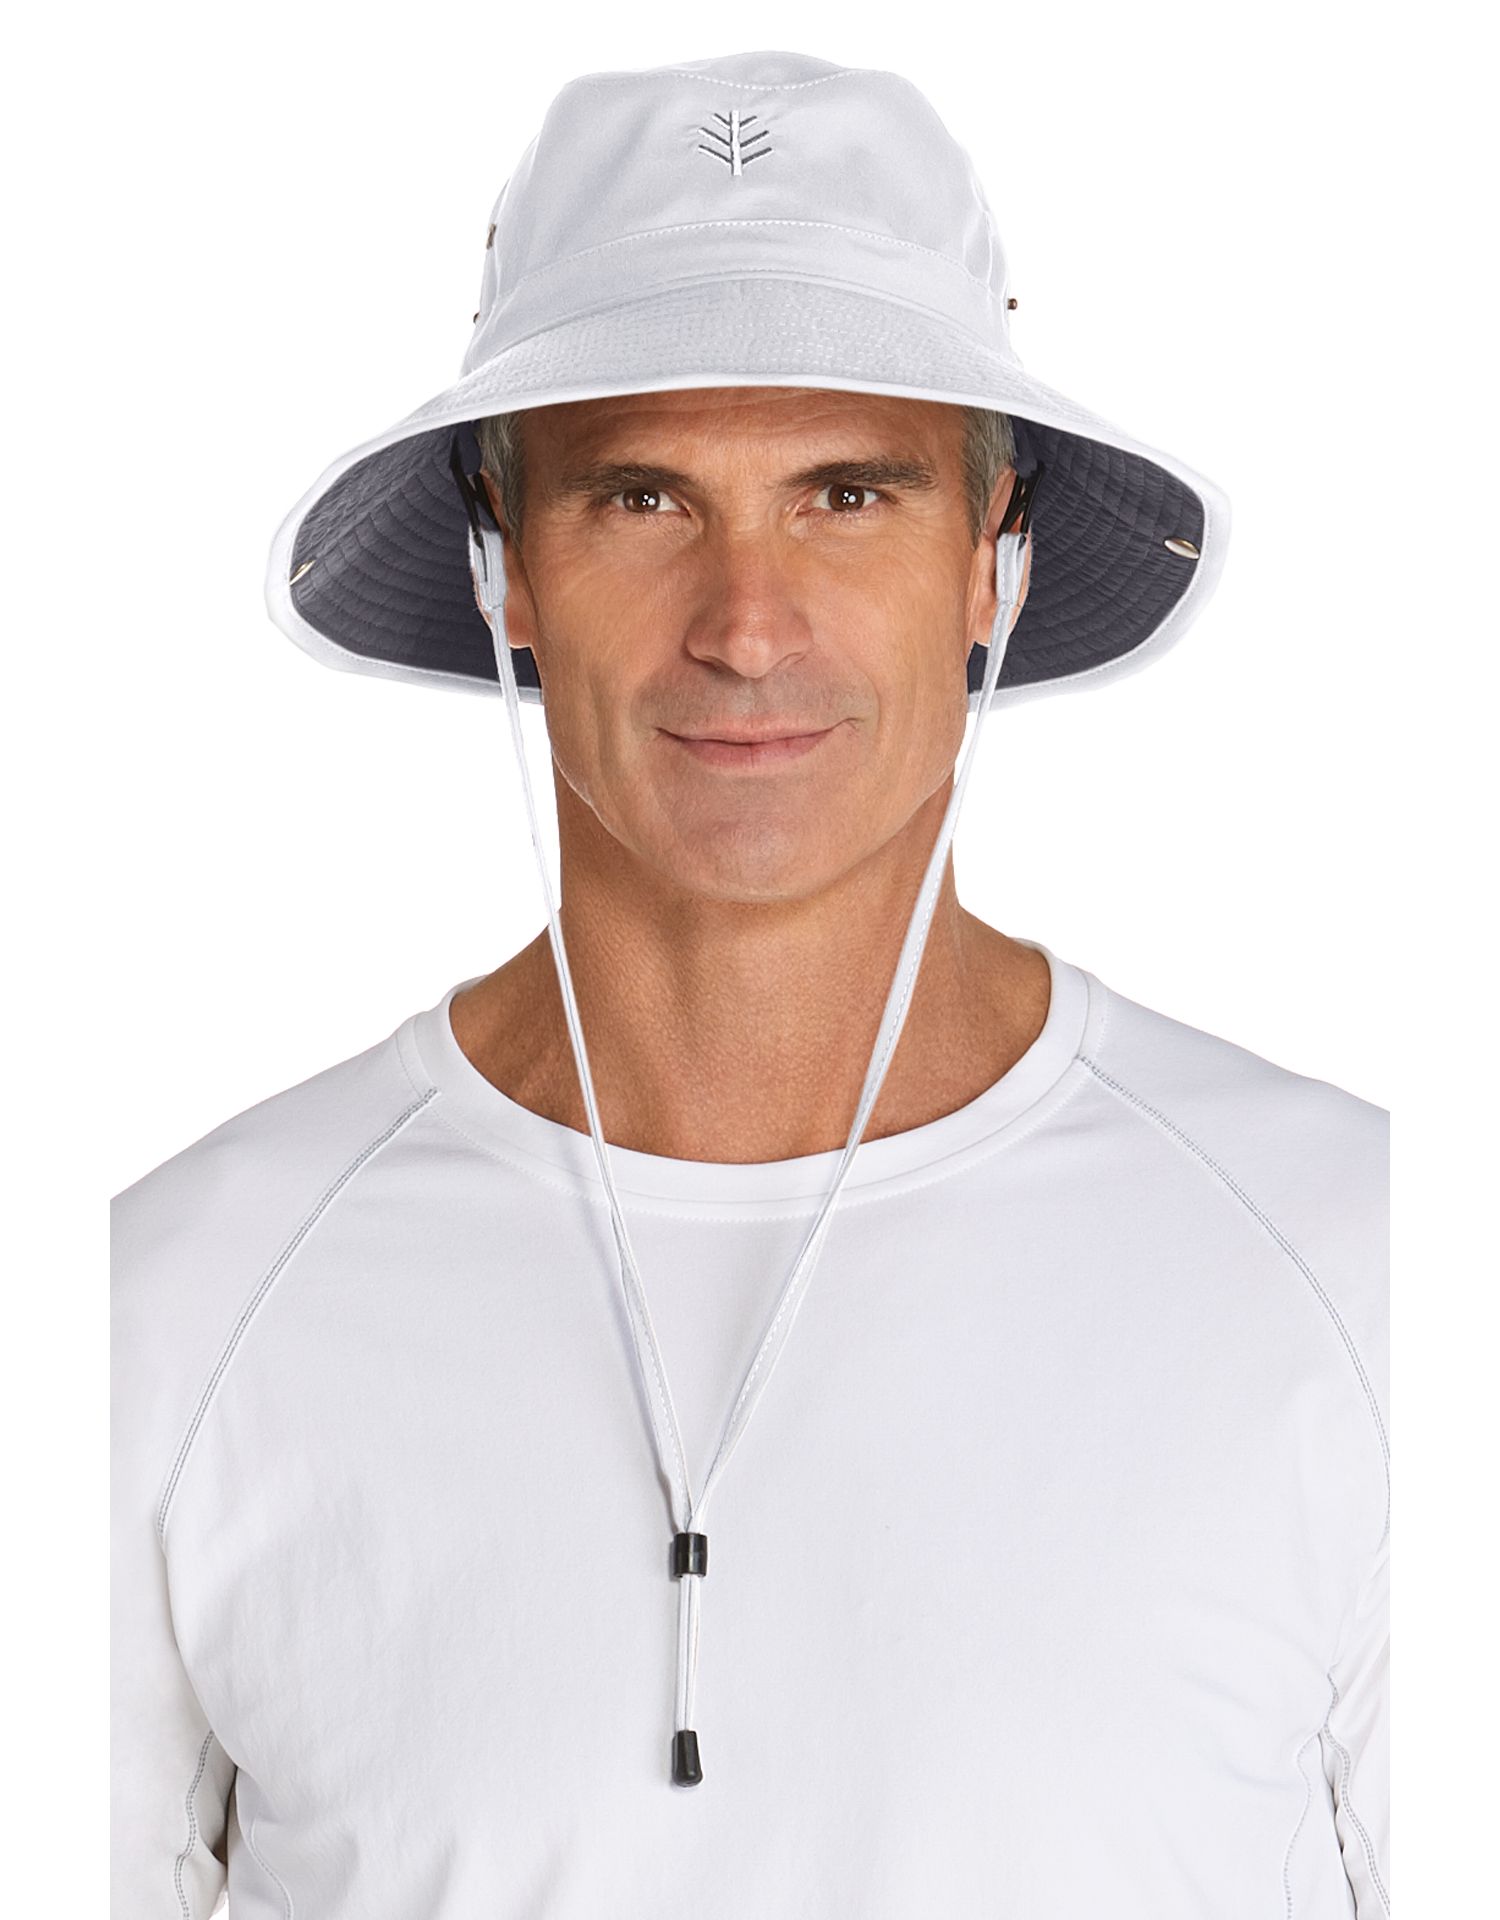 Coolibar - Federleichter UV Bucket Hut für Herren - Chase - Weiß/Carbon